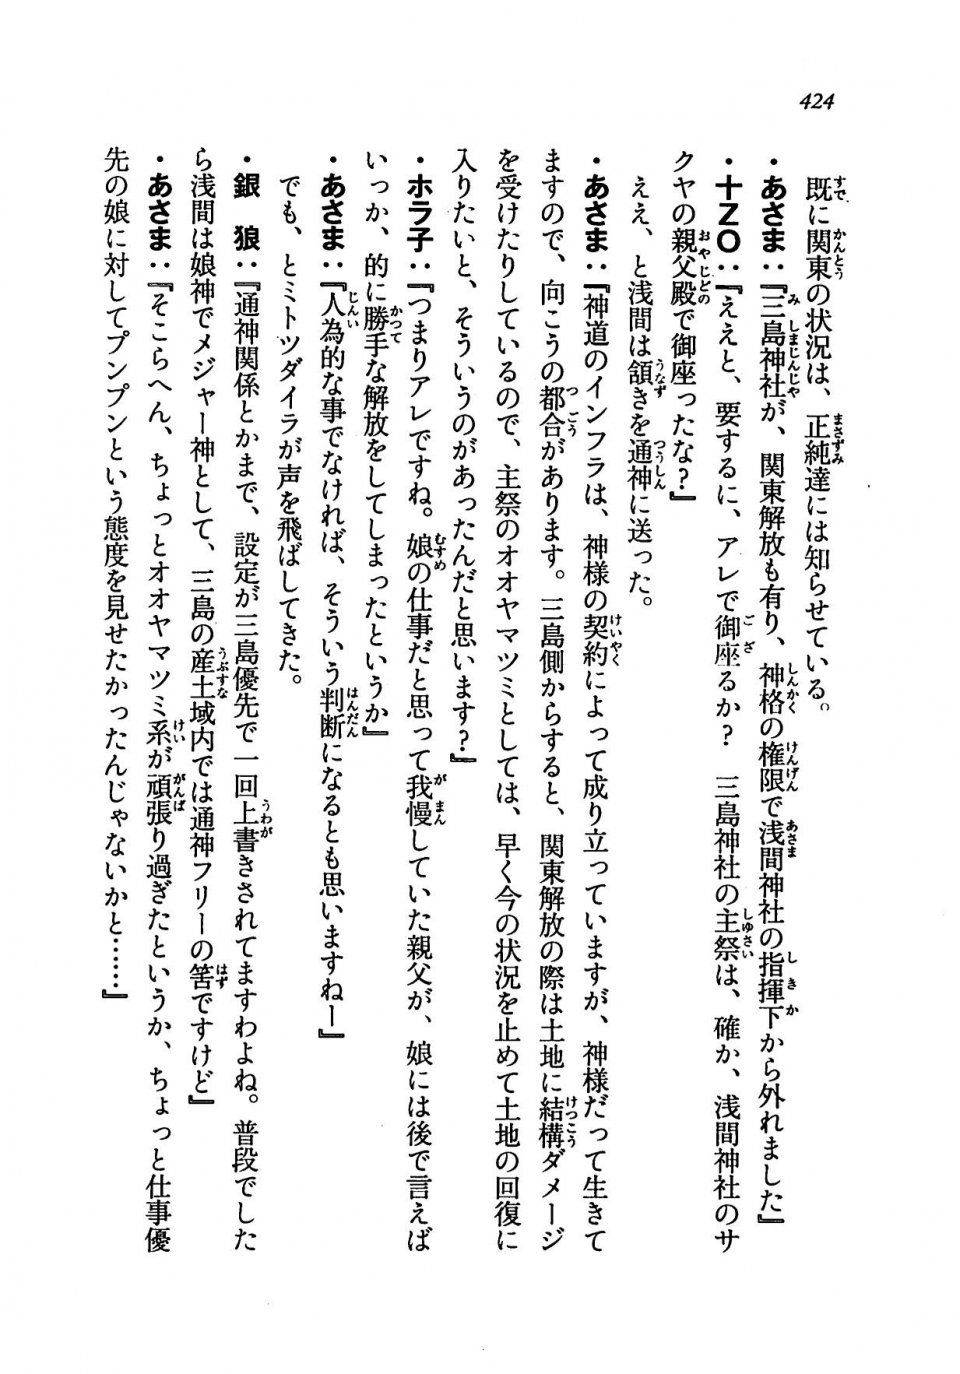 Kyoukai Senjou no Horizon LN Vol 19(8A) - Photo #424